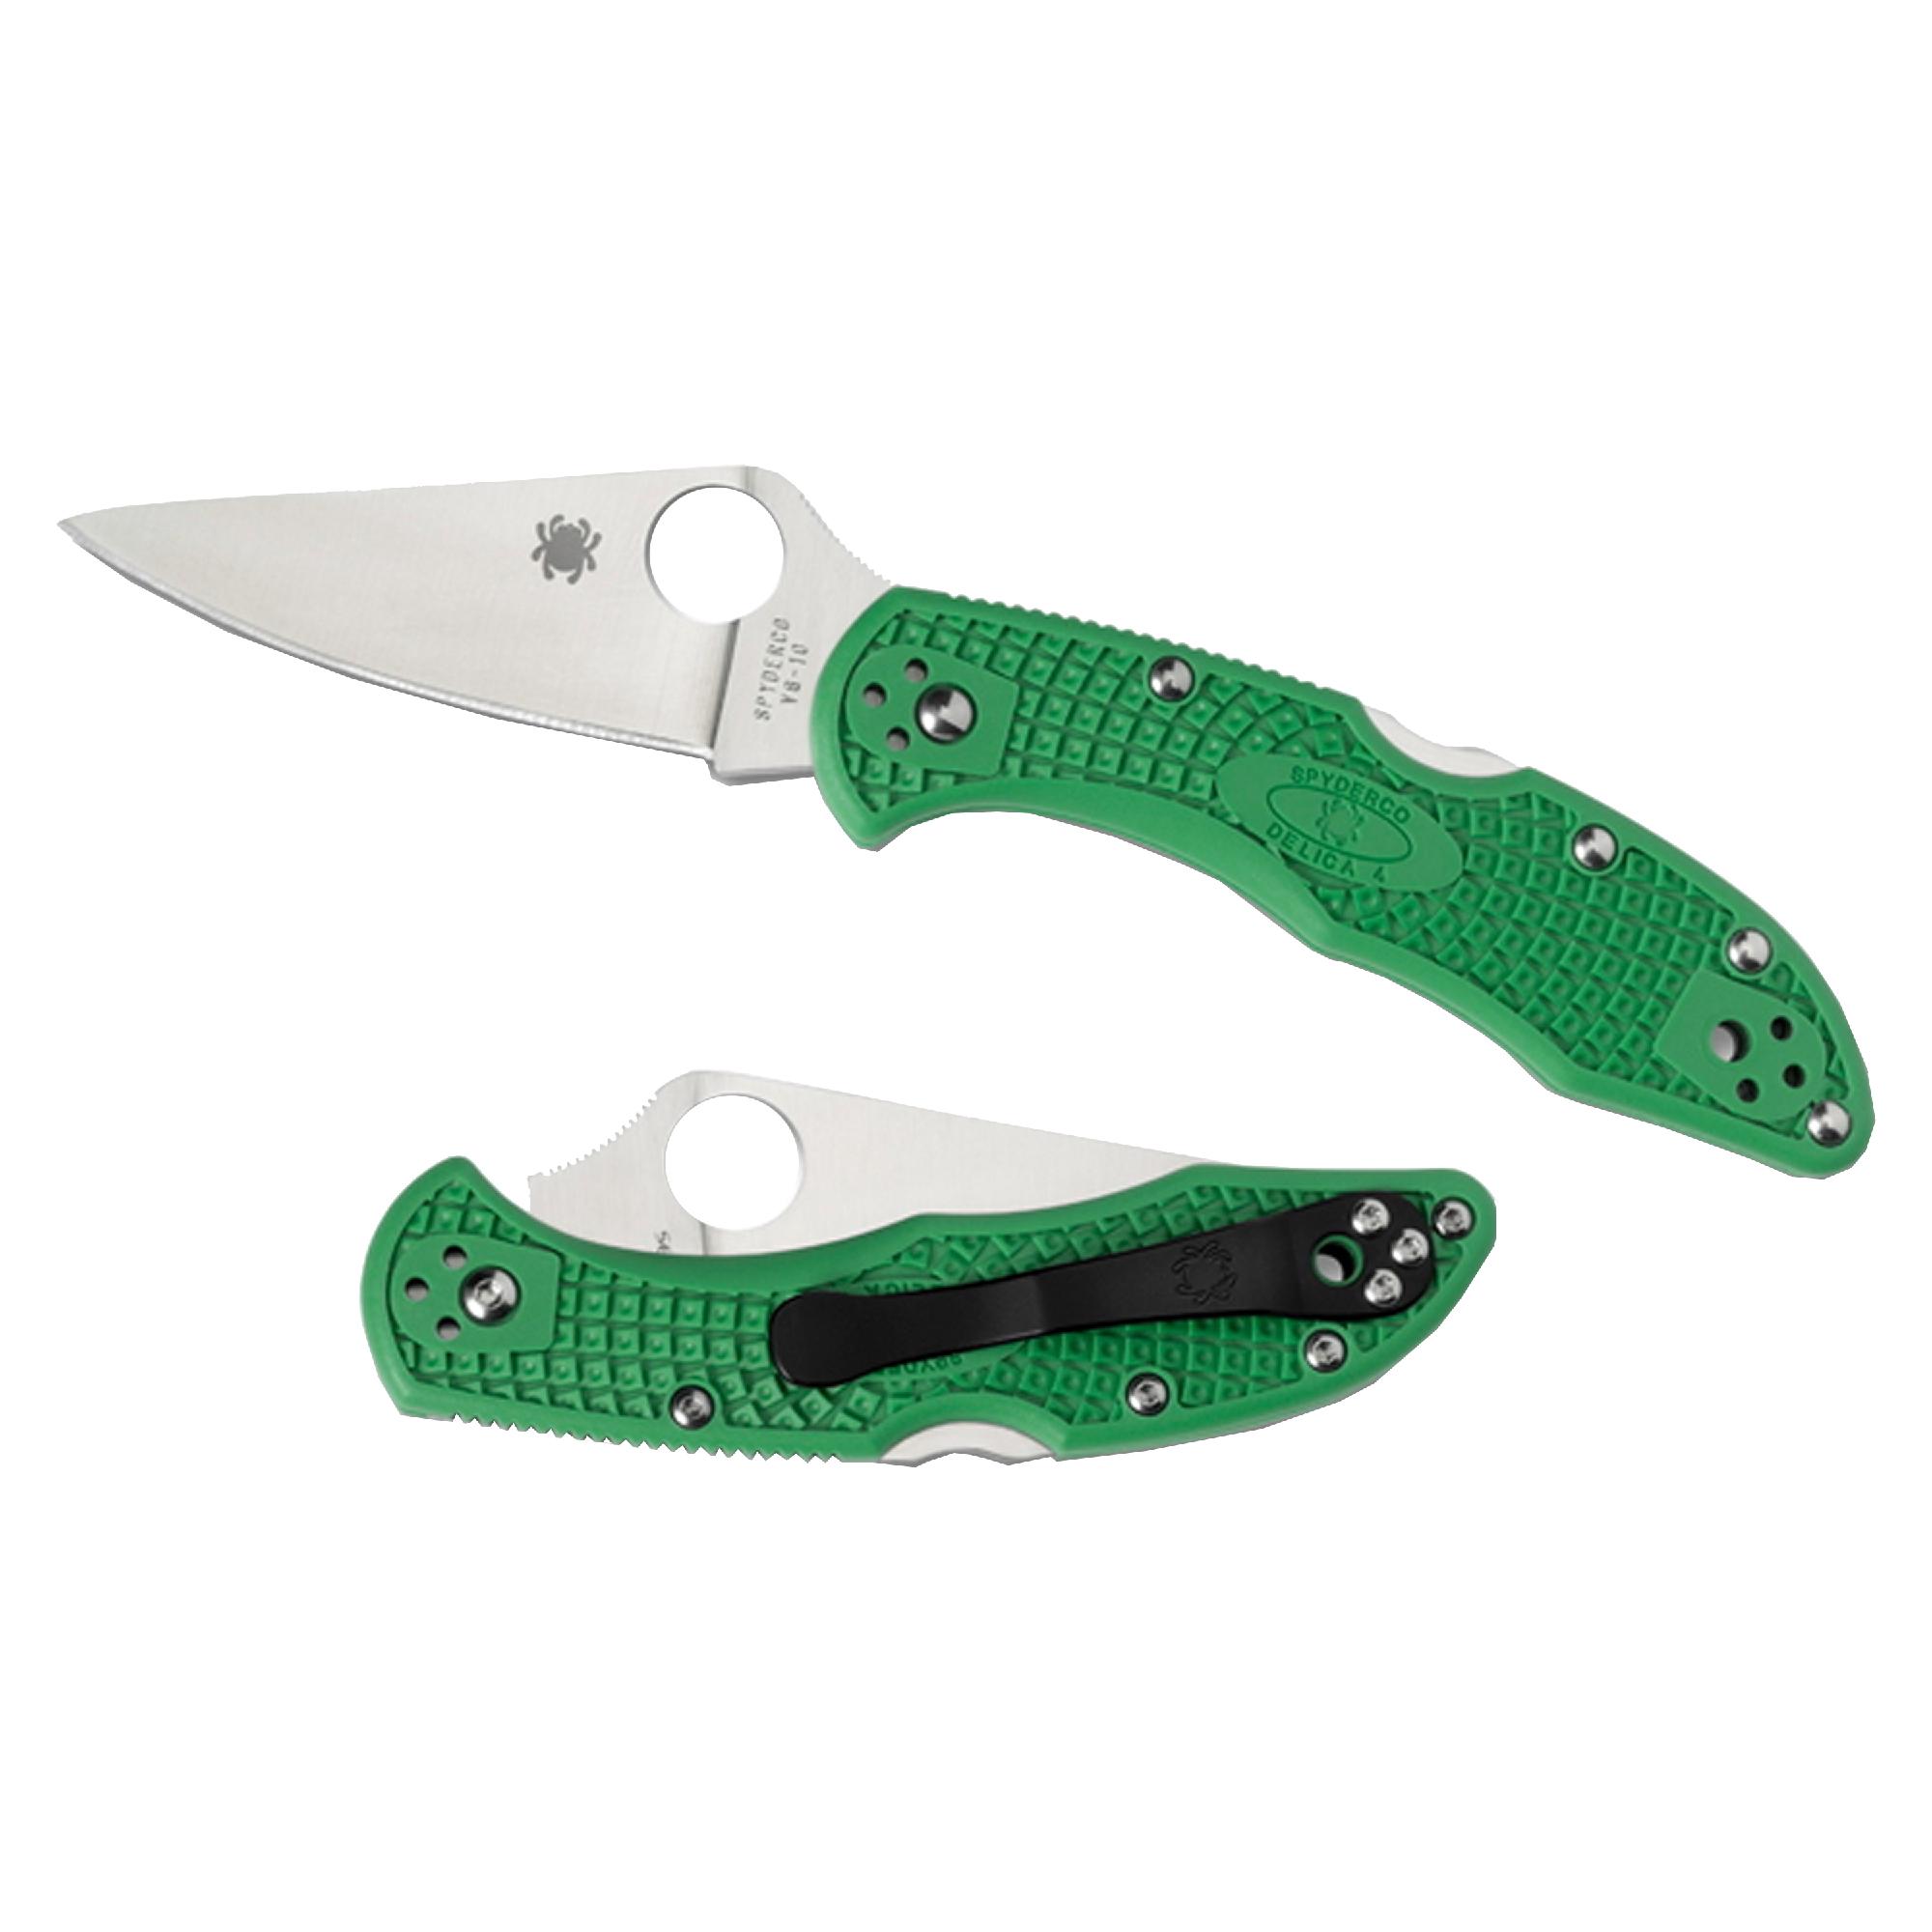 Spyderco Delica Lightweight Green Knife